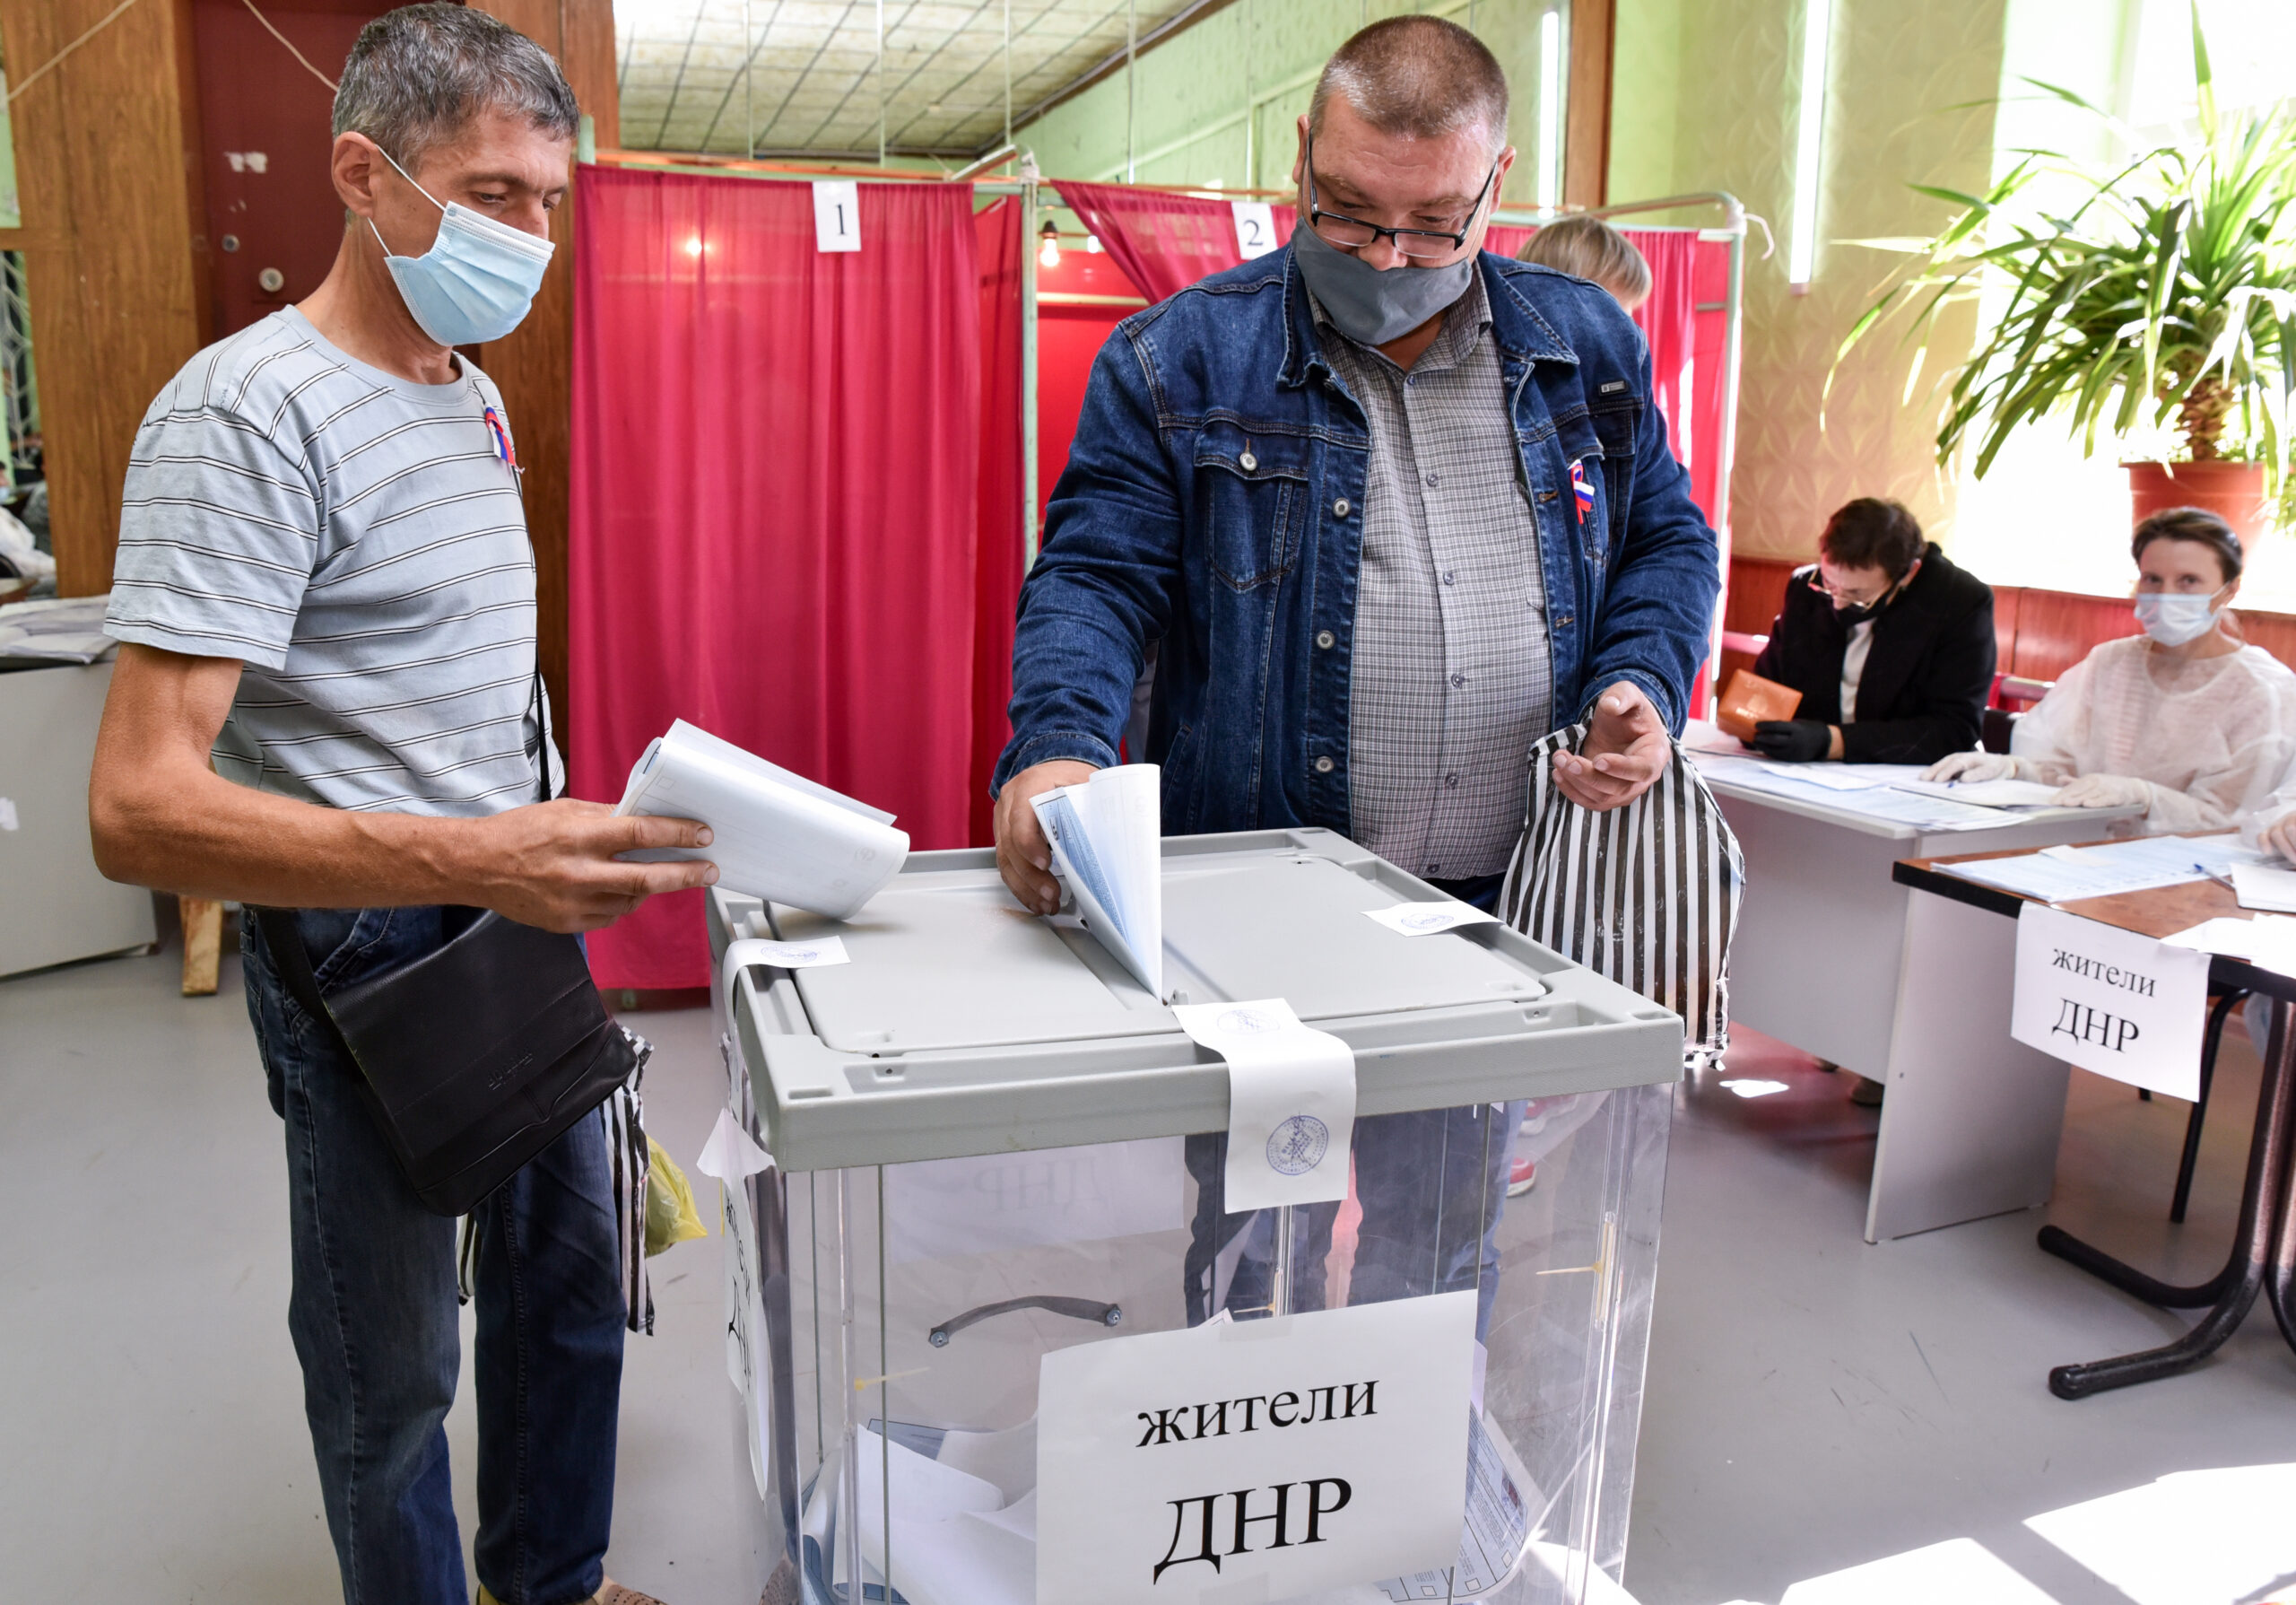 Те же, кто доехал до избирательных участков в Ростовской области России, смогли проголосовать по-старинке, бросив бюллетень в реальную урну для голосования. Фото Nikolai Trishin/TASS/Scanpix/LETA